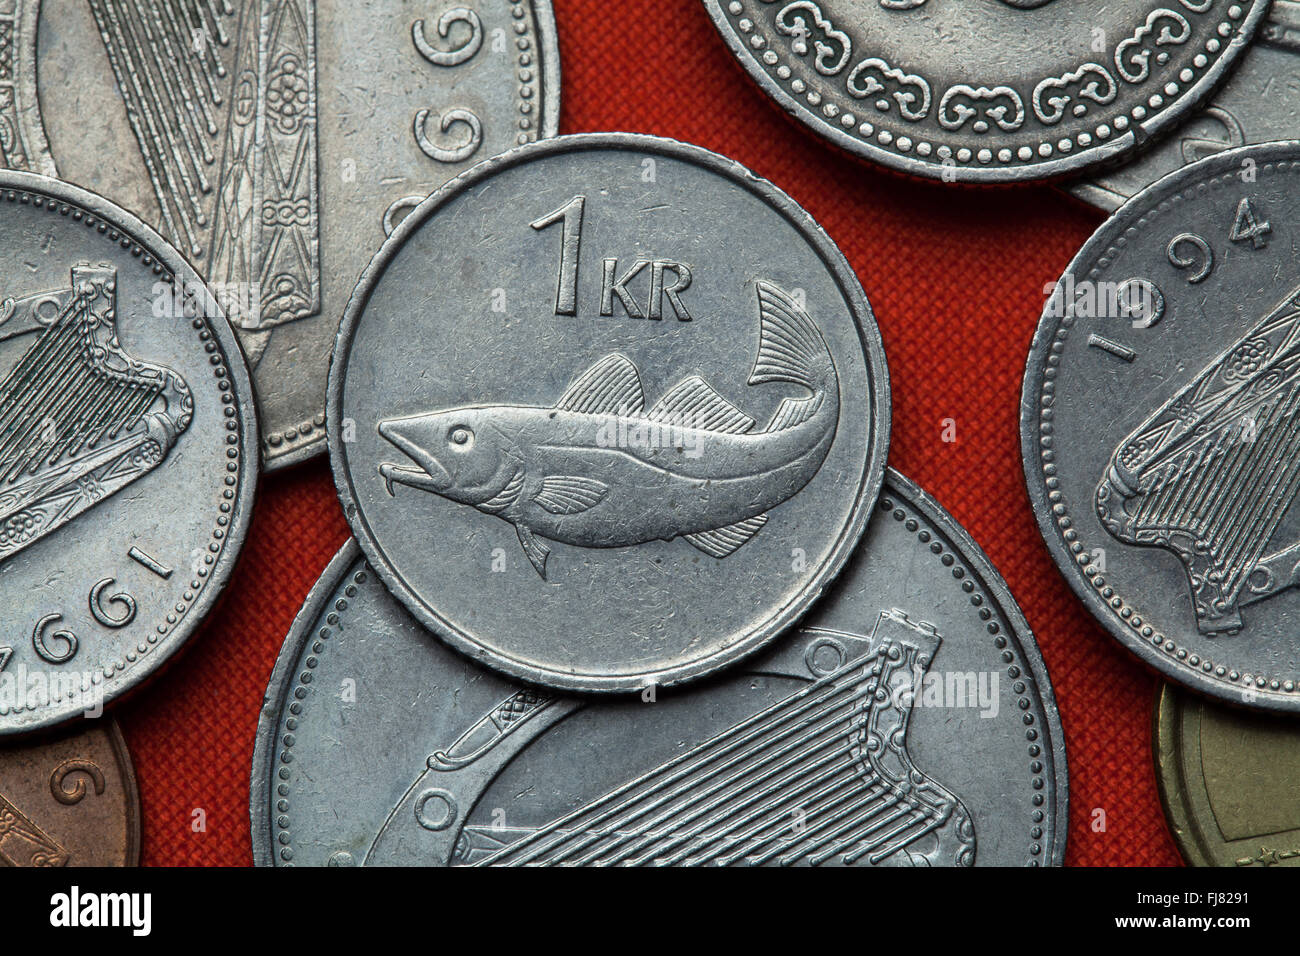 Pièces de monnaie de l'Islande. La morue (Gadus morhua) représenté dans la pièce d'une couronne islandaise (1987). Banque D'Images